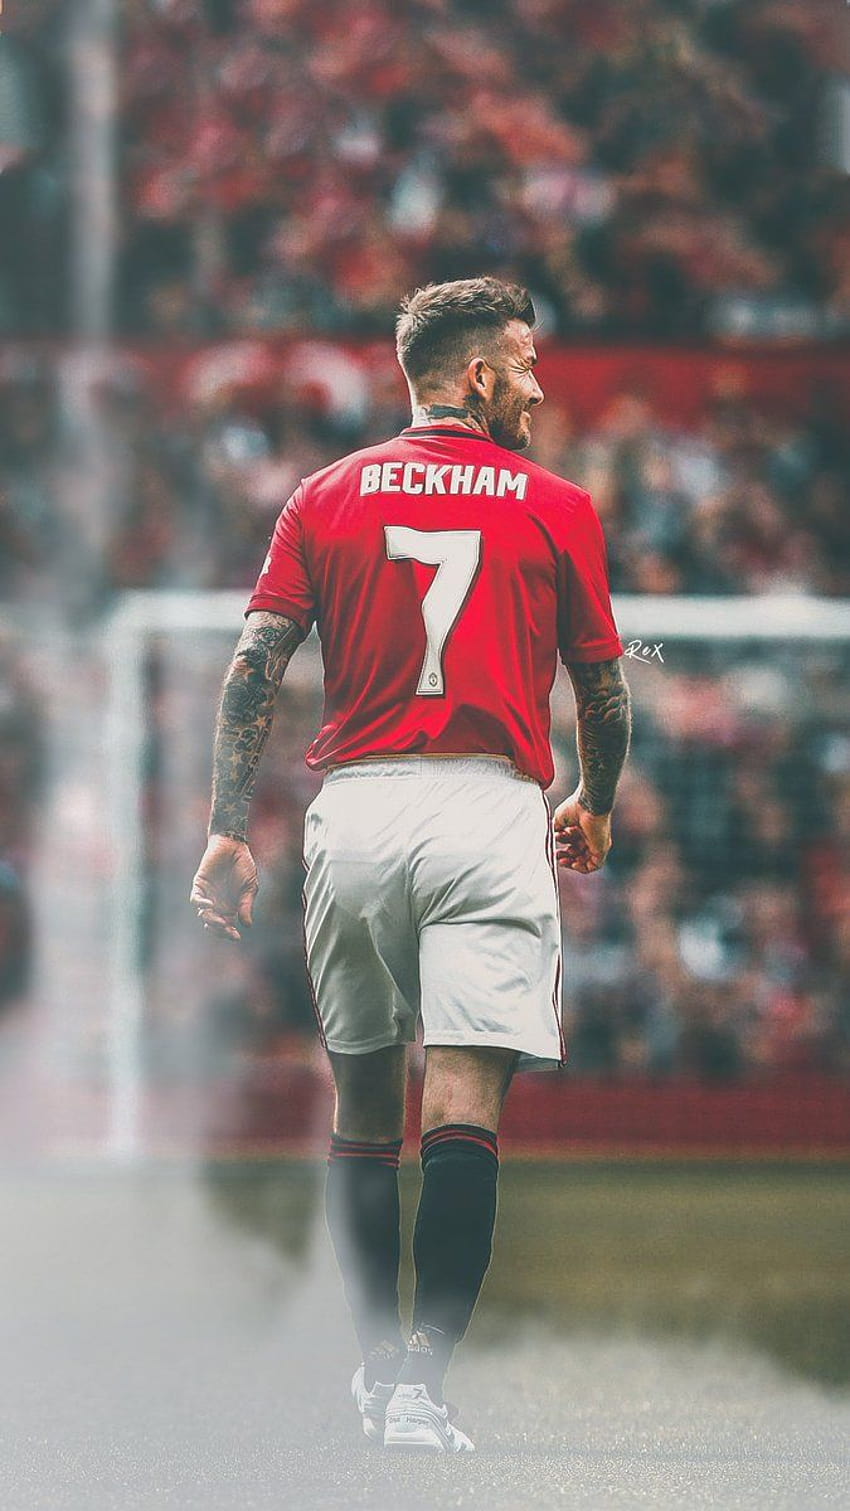 David Beckham Man Utd, david beckham manchester united HD phone wallpaper